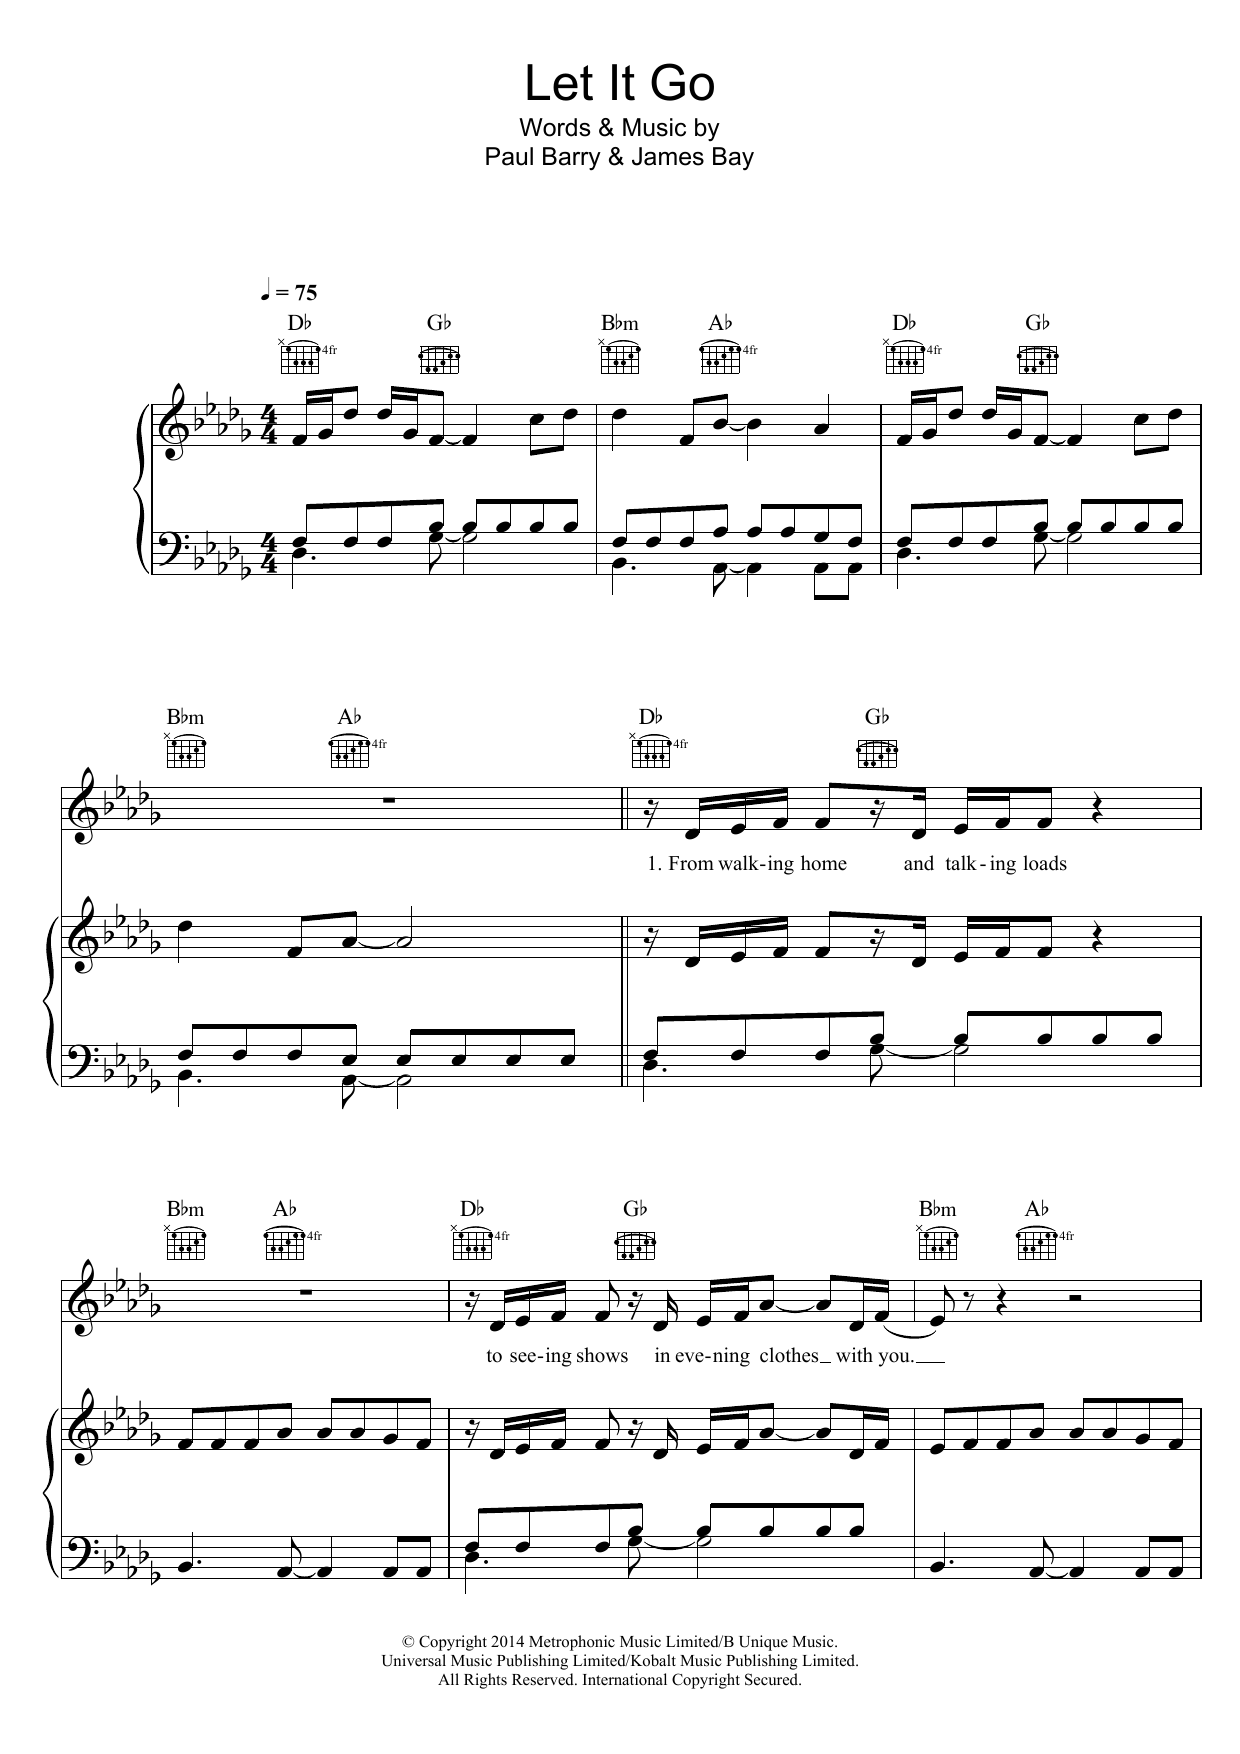 James Bay Let It Go Sheet Music Notes & Chords for Ukulele - Download or Print PDF